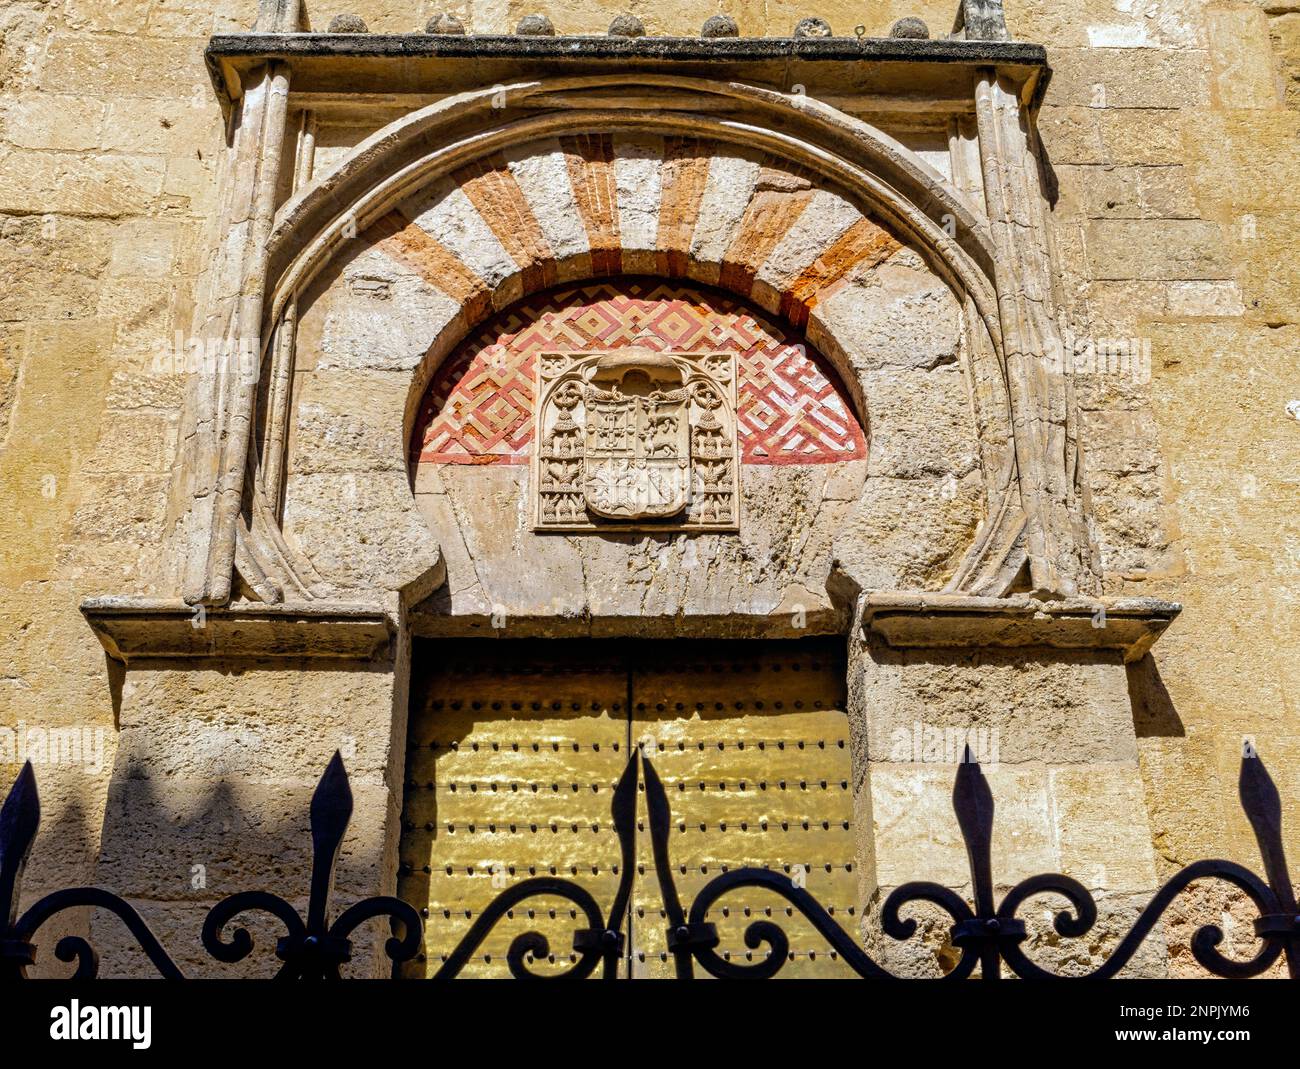 Puerta de San Miguel, ou St. Porte de Michael dans le mur ouest de la Mezquita, la mosquée, Calle Torrijos. Cordoue, province de Cordoue, Andalousie, Sud S. Banque D'Images